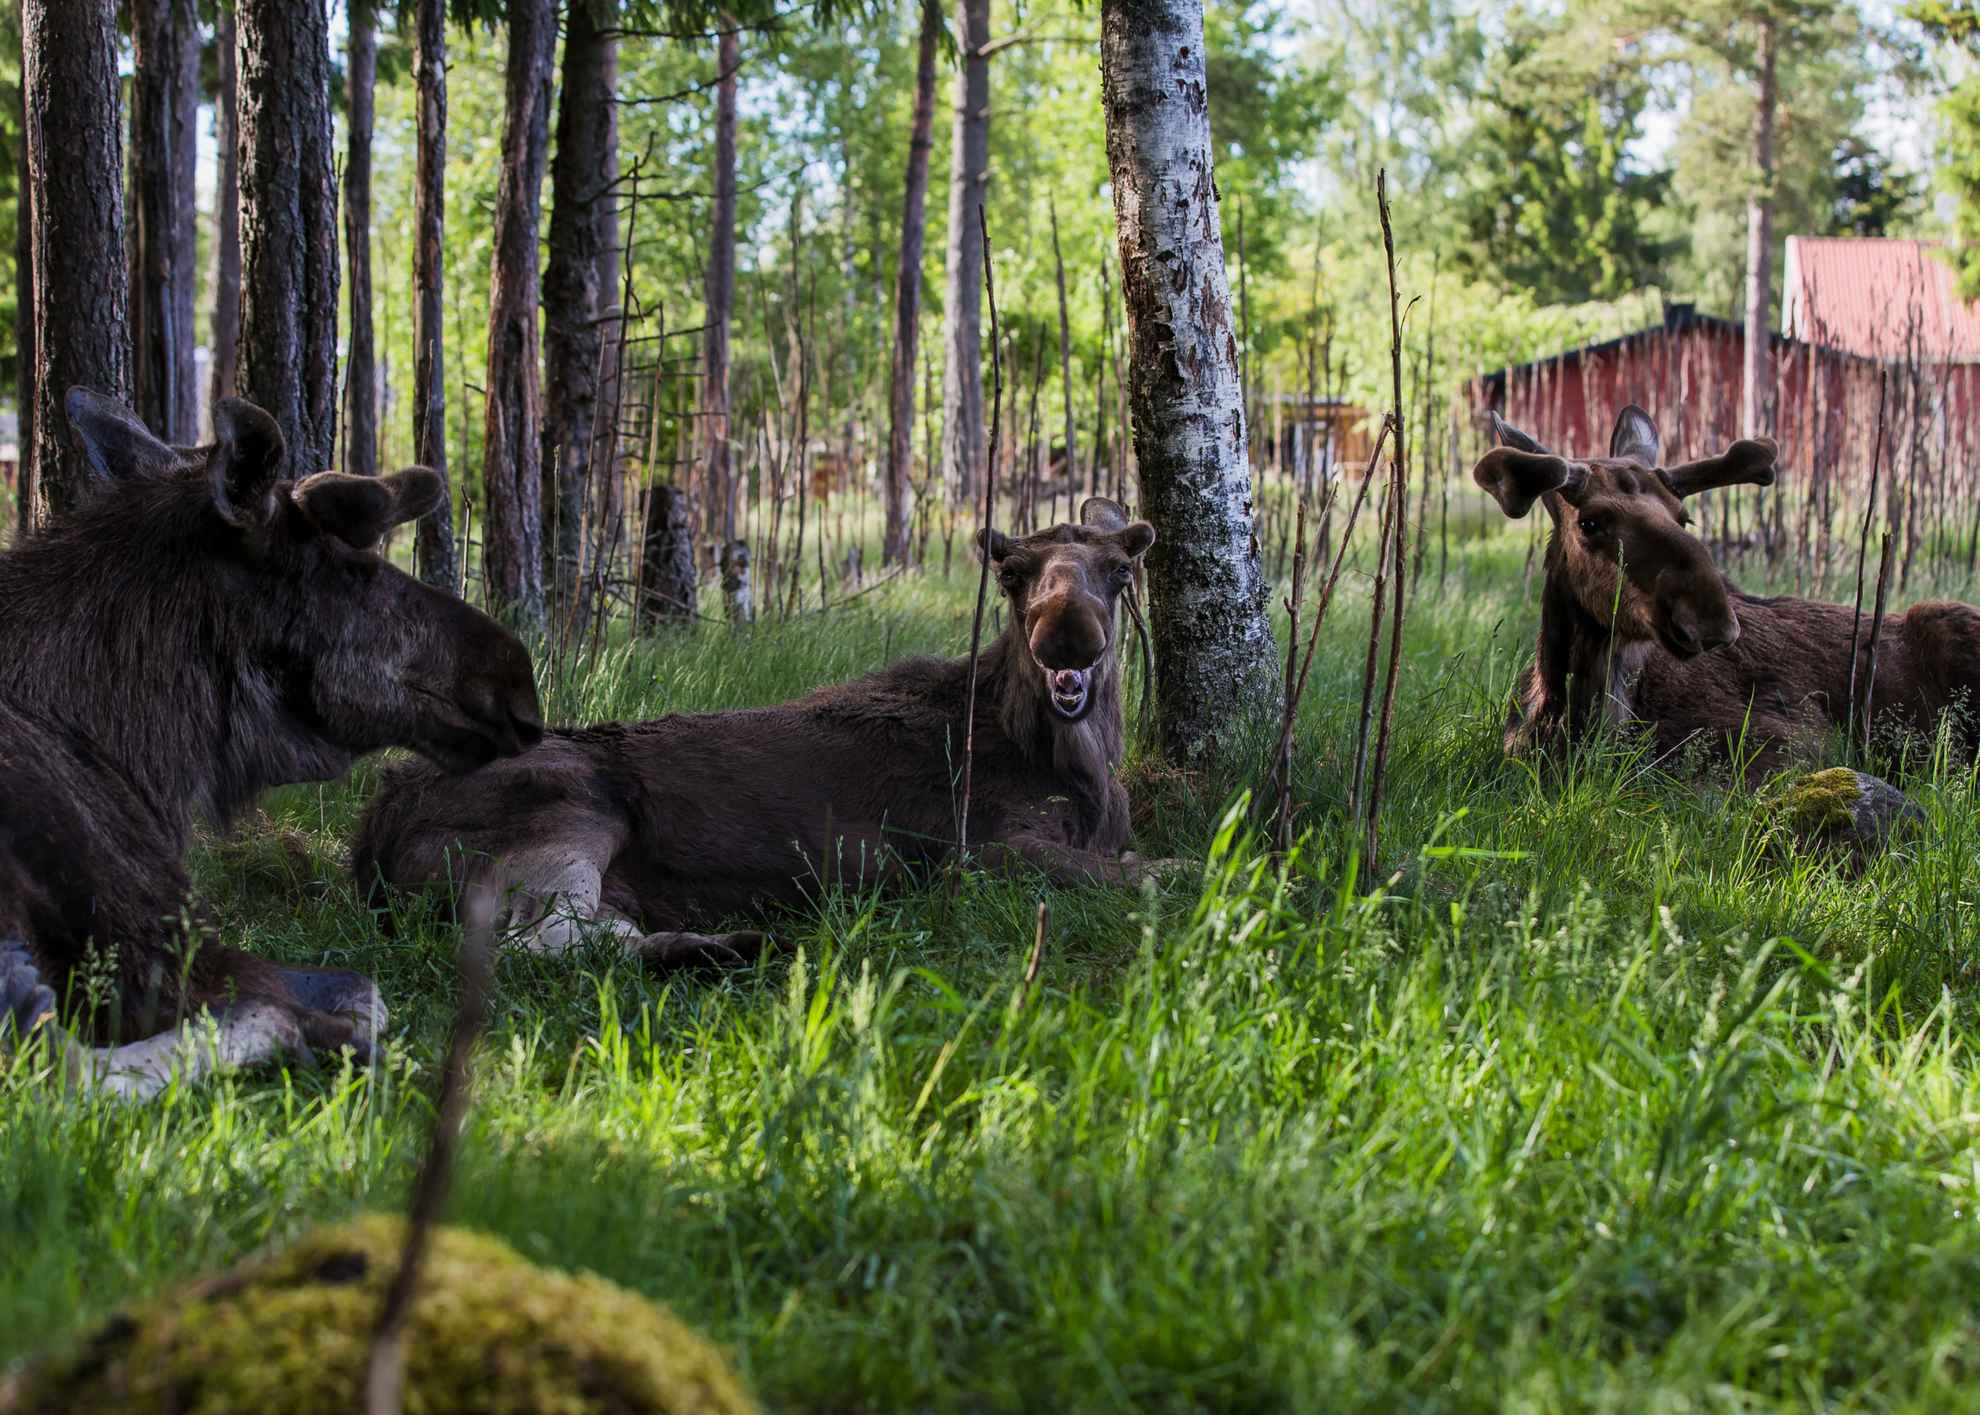 Drie elanden liggen in het gras, in de schaduw van de bomen.